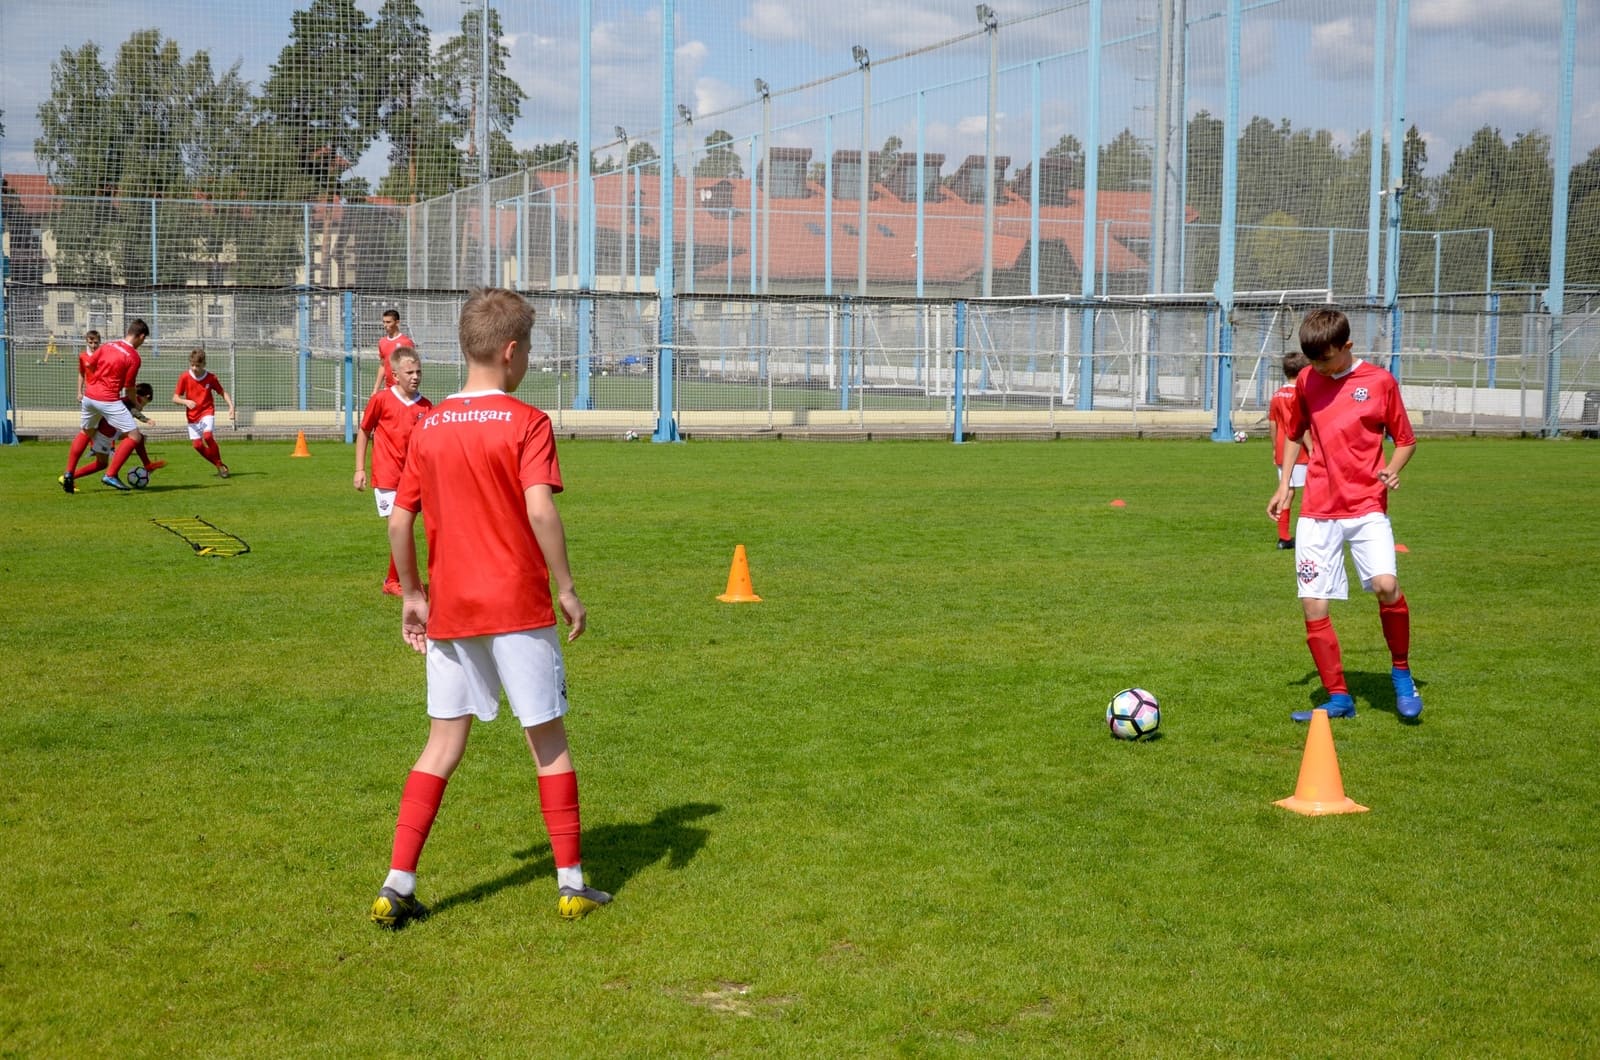 «FC Stuttgart - Кратово» – футбольный лагерь в Подмосковье, фото 10